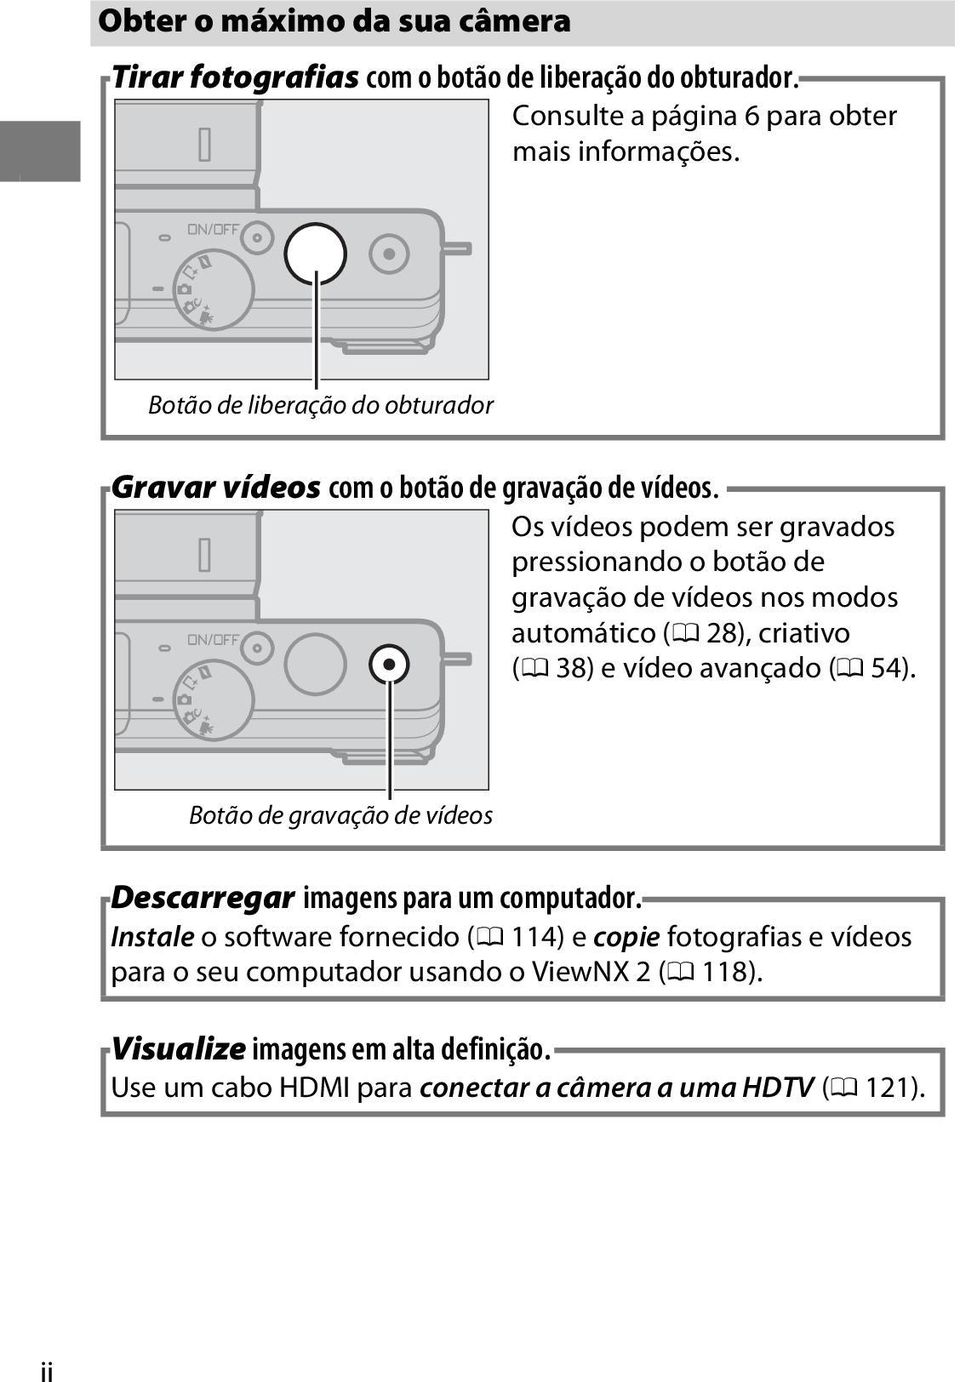 Os vídeos podem ser gravados pressionando o botão de gravação de vídeos nos modos automático (0 28), criativo (0 38) e vídeo avançado (0 54).